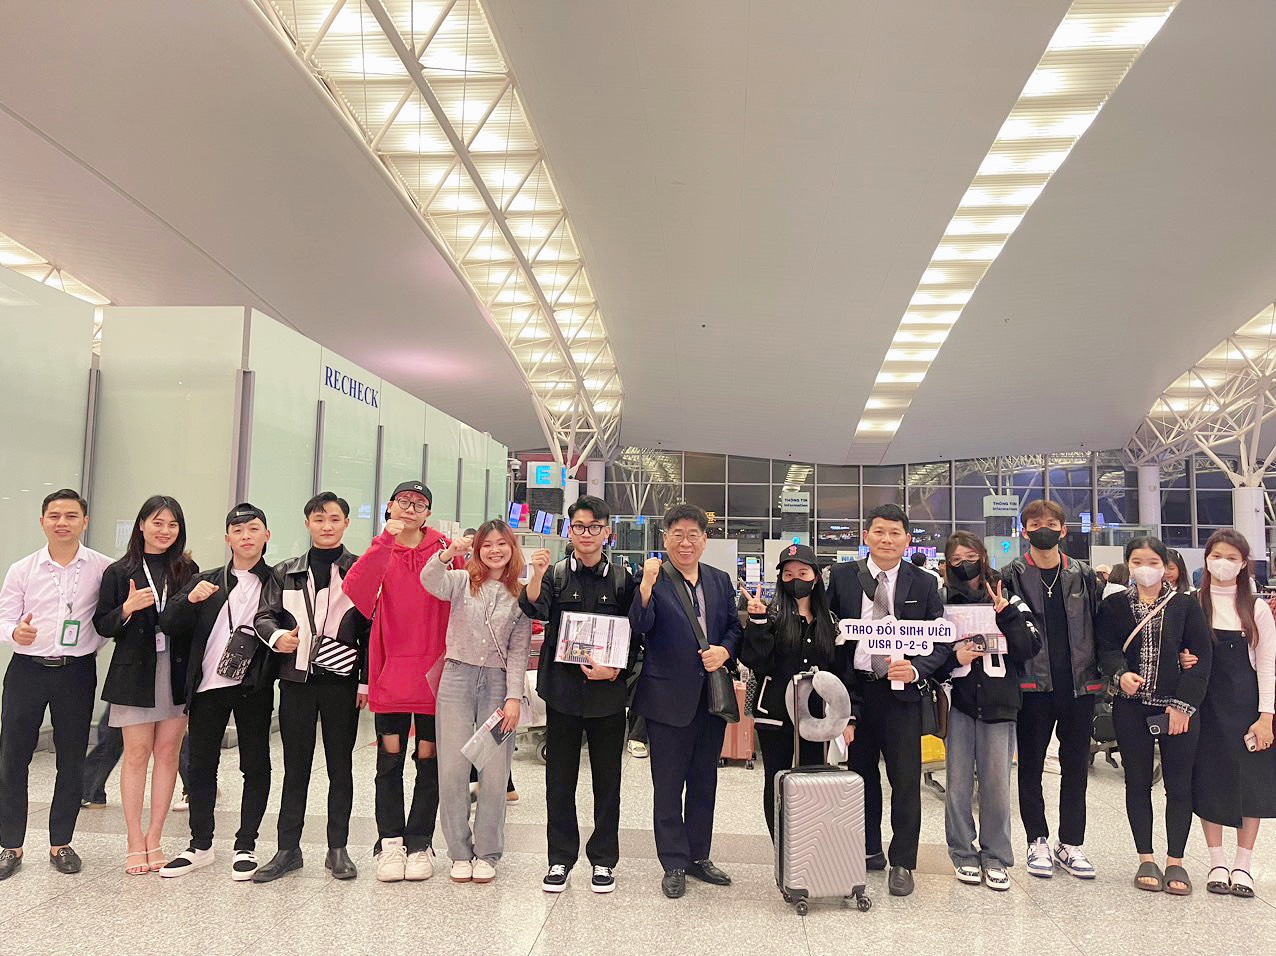 Trường Cao đẳng Quốc tế Hà Nội chúc mừng các bạn sinh viên đỗ visa trao đổi diện Du học sớm 1+1+2 tại Trường Cao đẳng Công nghệ thông tin Kyungnam KIT (Busan)